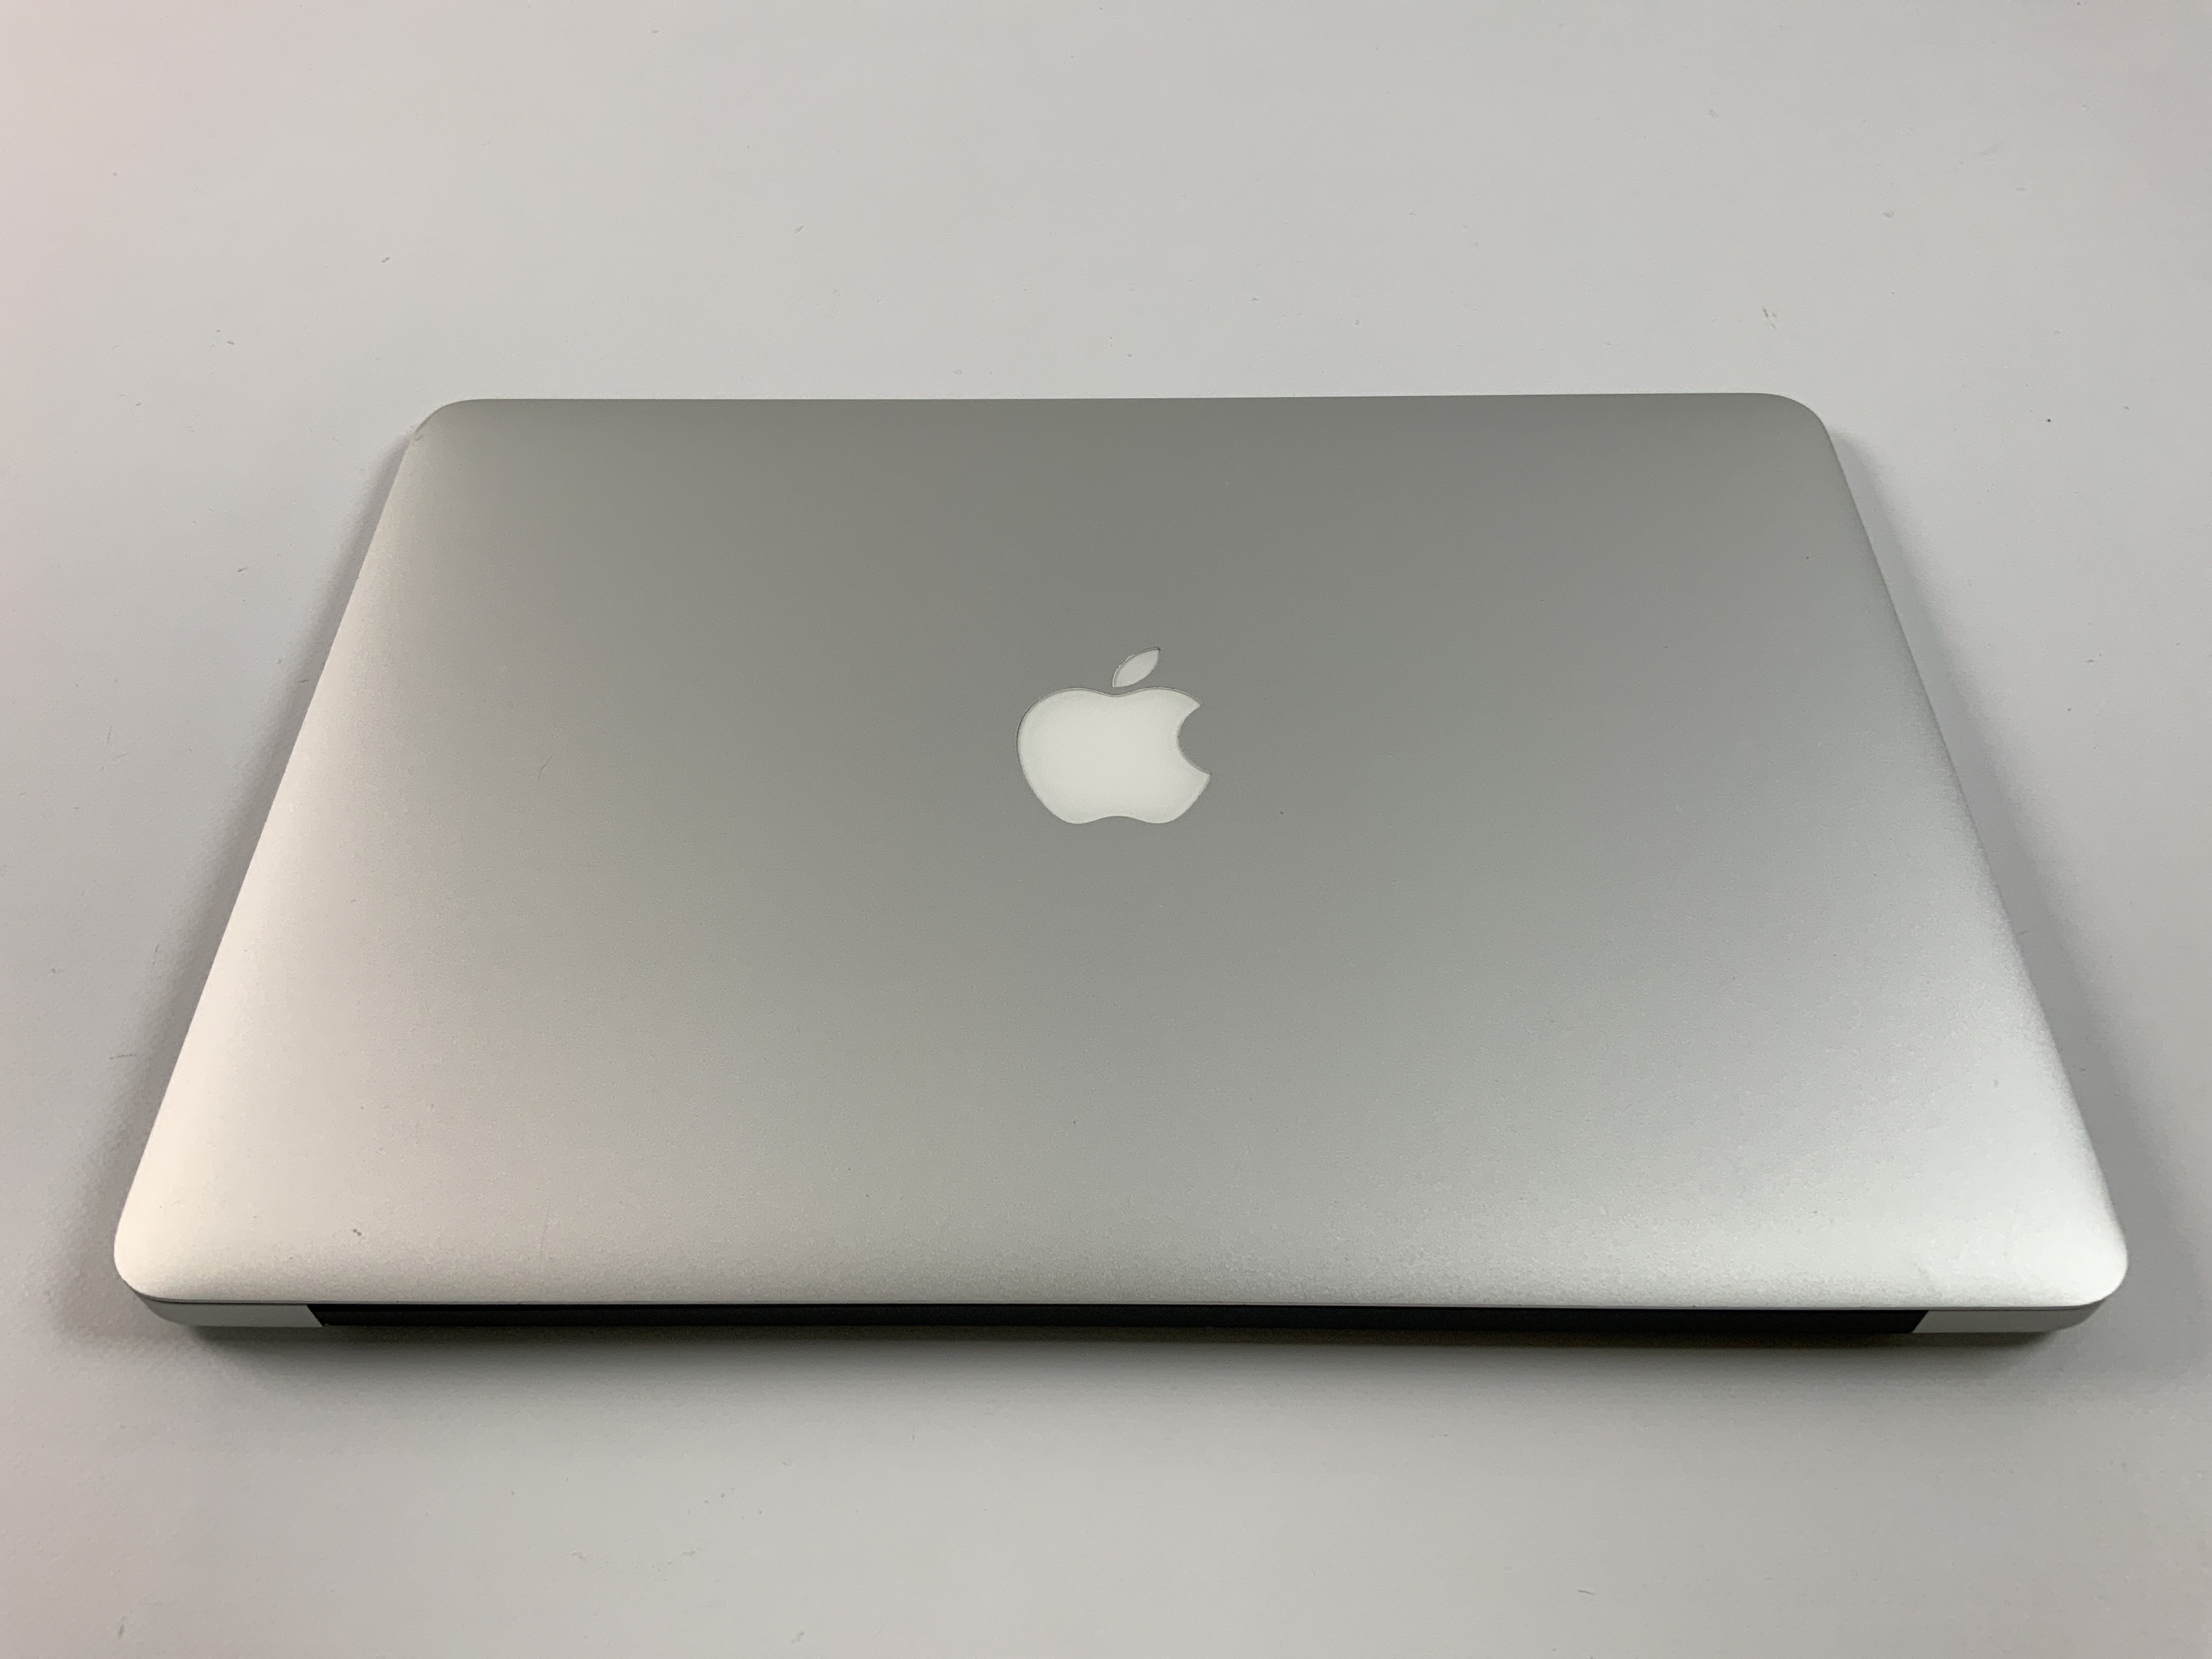 MacBook Air 13" Mid 2017 (Intel Core i5 1.8 GHz 8 GB RAM 128 GB SSD), Intel Core i5 1.8 GHz, 8 GB RAM, 128 GB SSD, Kuva 2